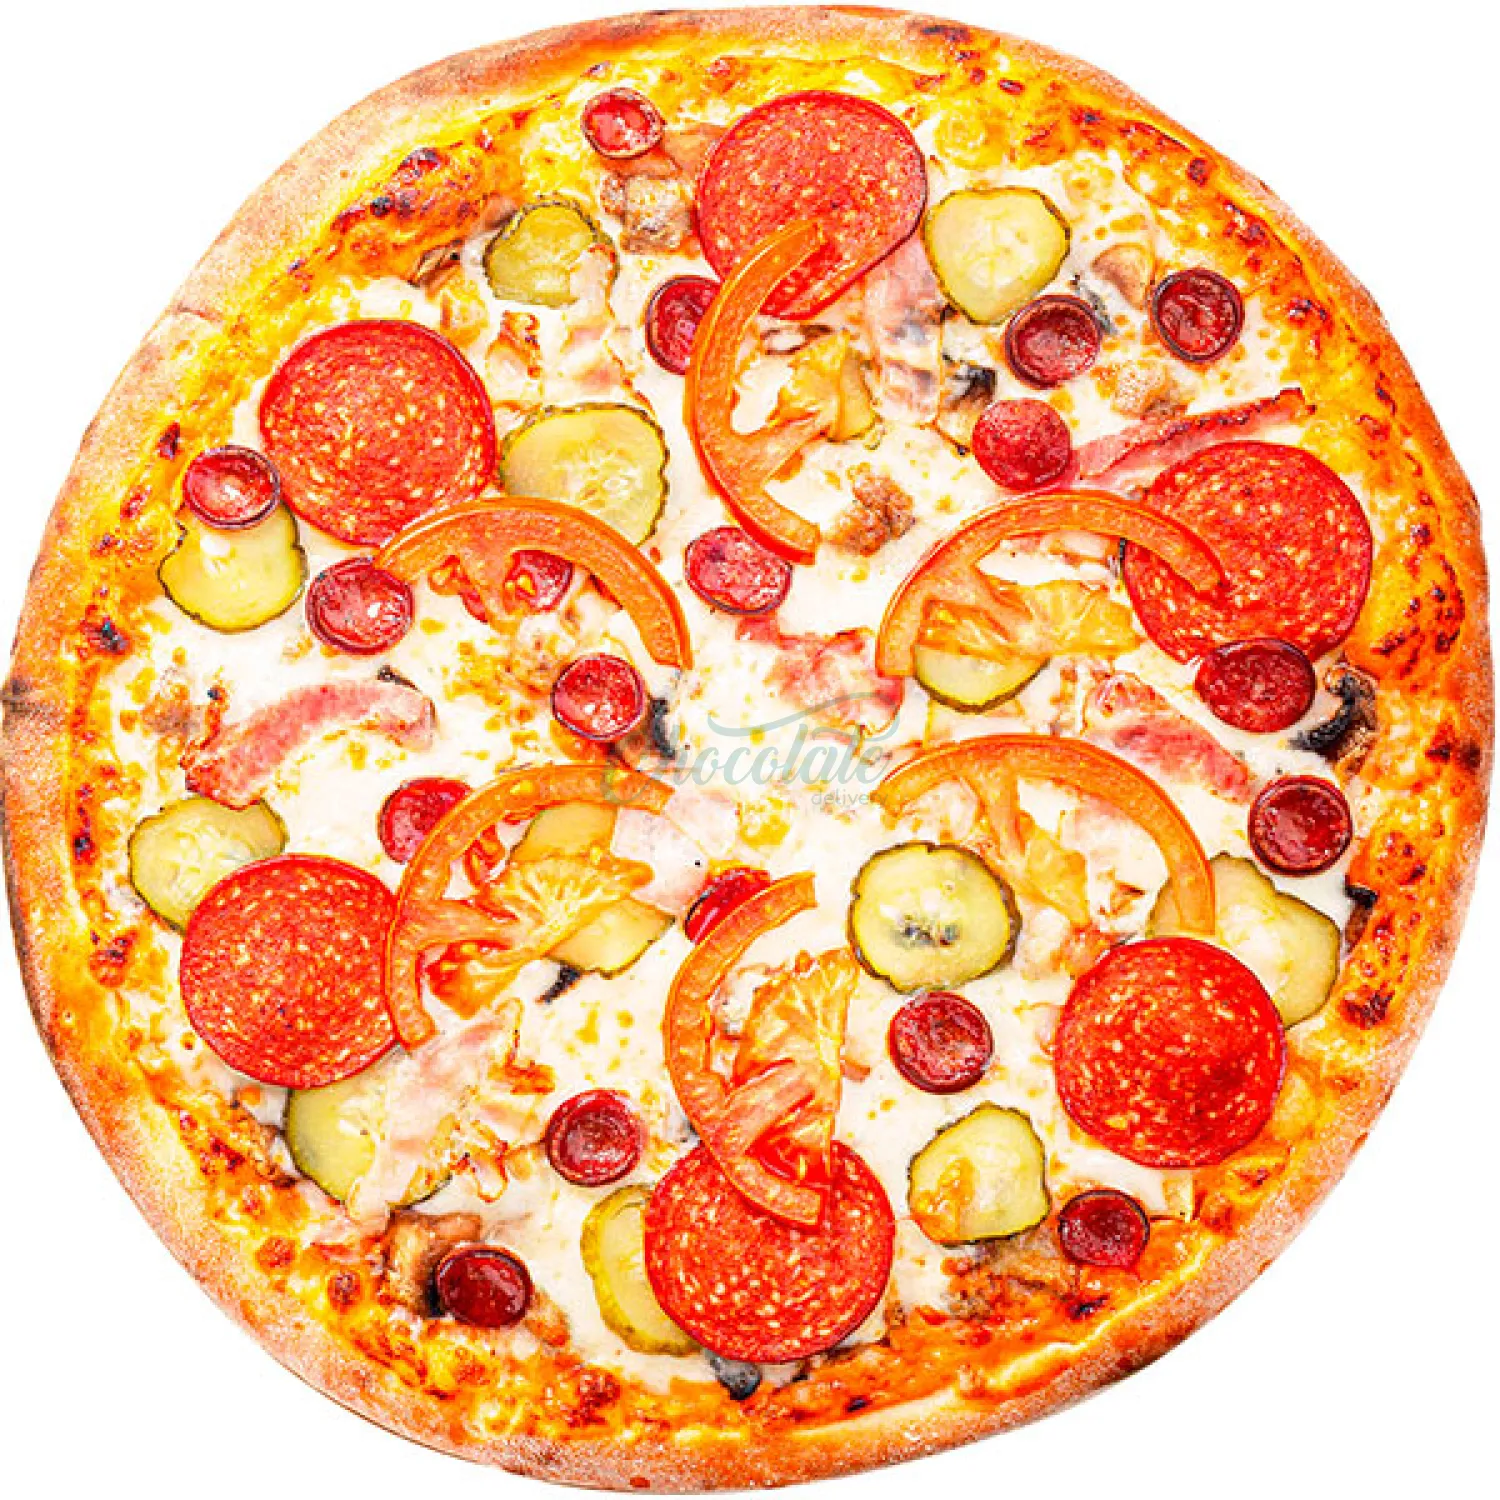 сколько стоит средняя пицца пепперони цена фото 74